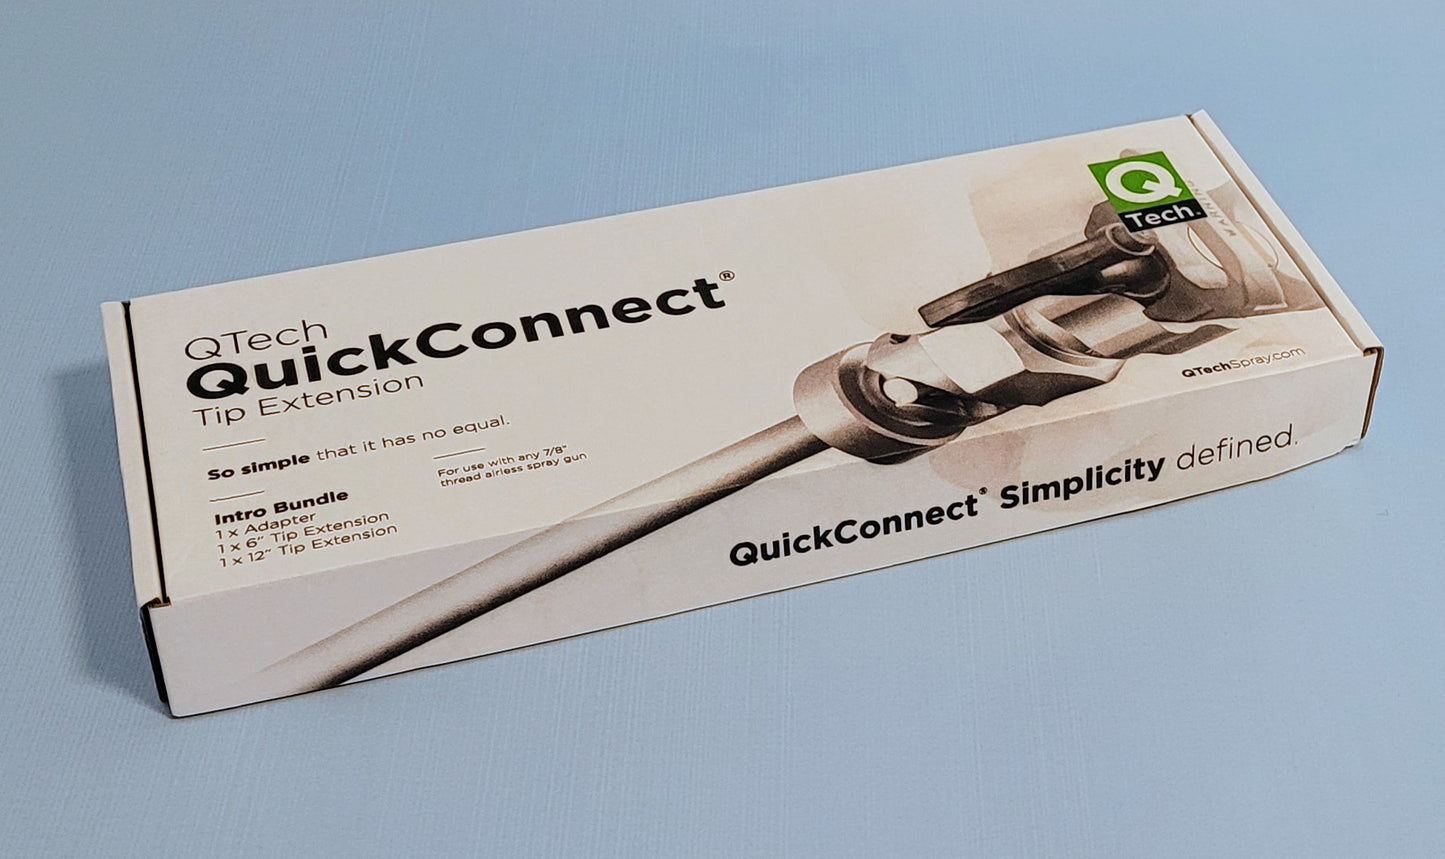 QTech Quick Connect Tip Extension